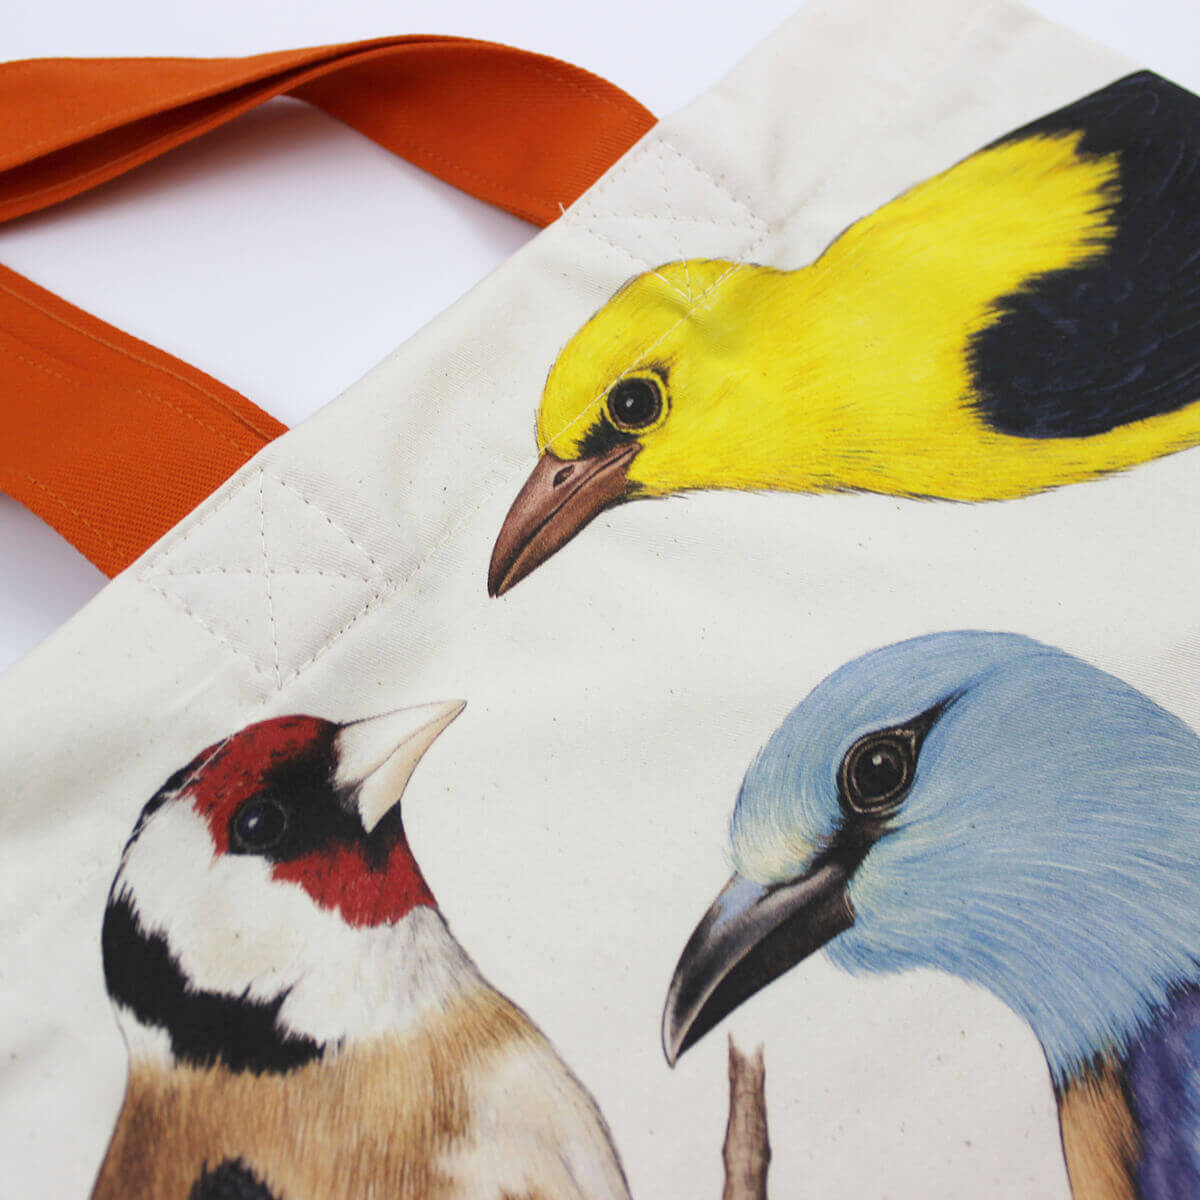 Zbliżenie na ptasią torbę z ilustracjami 4 ptaków